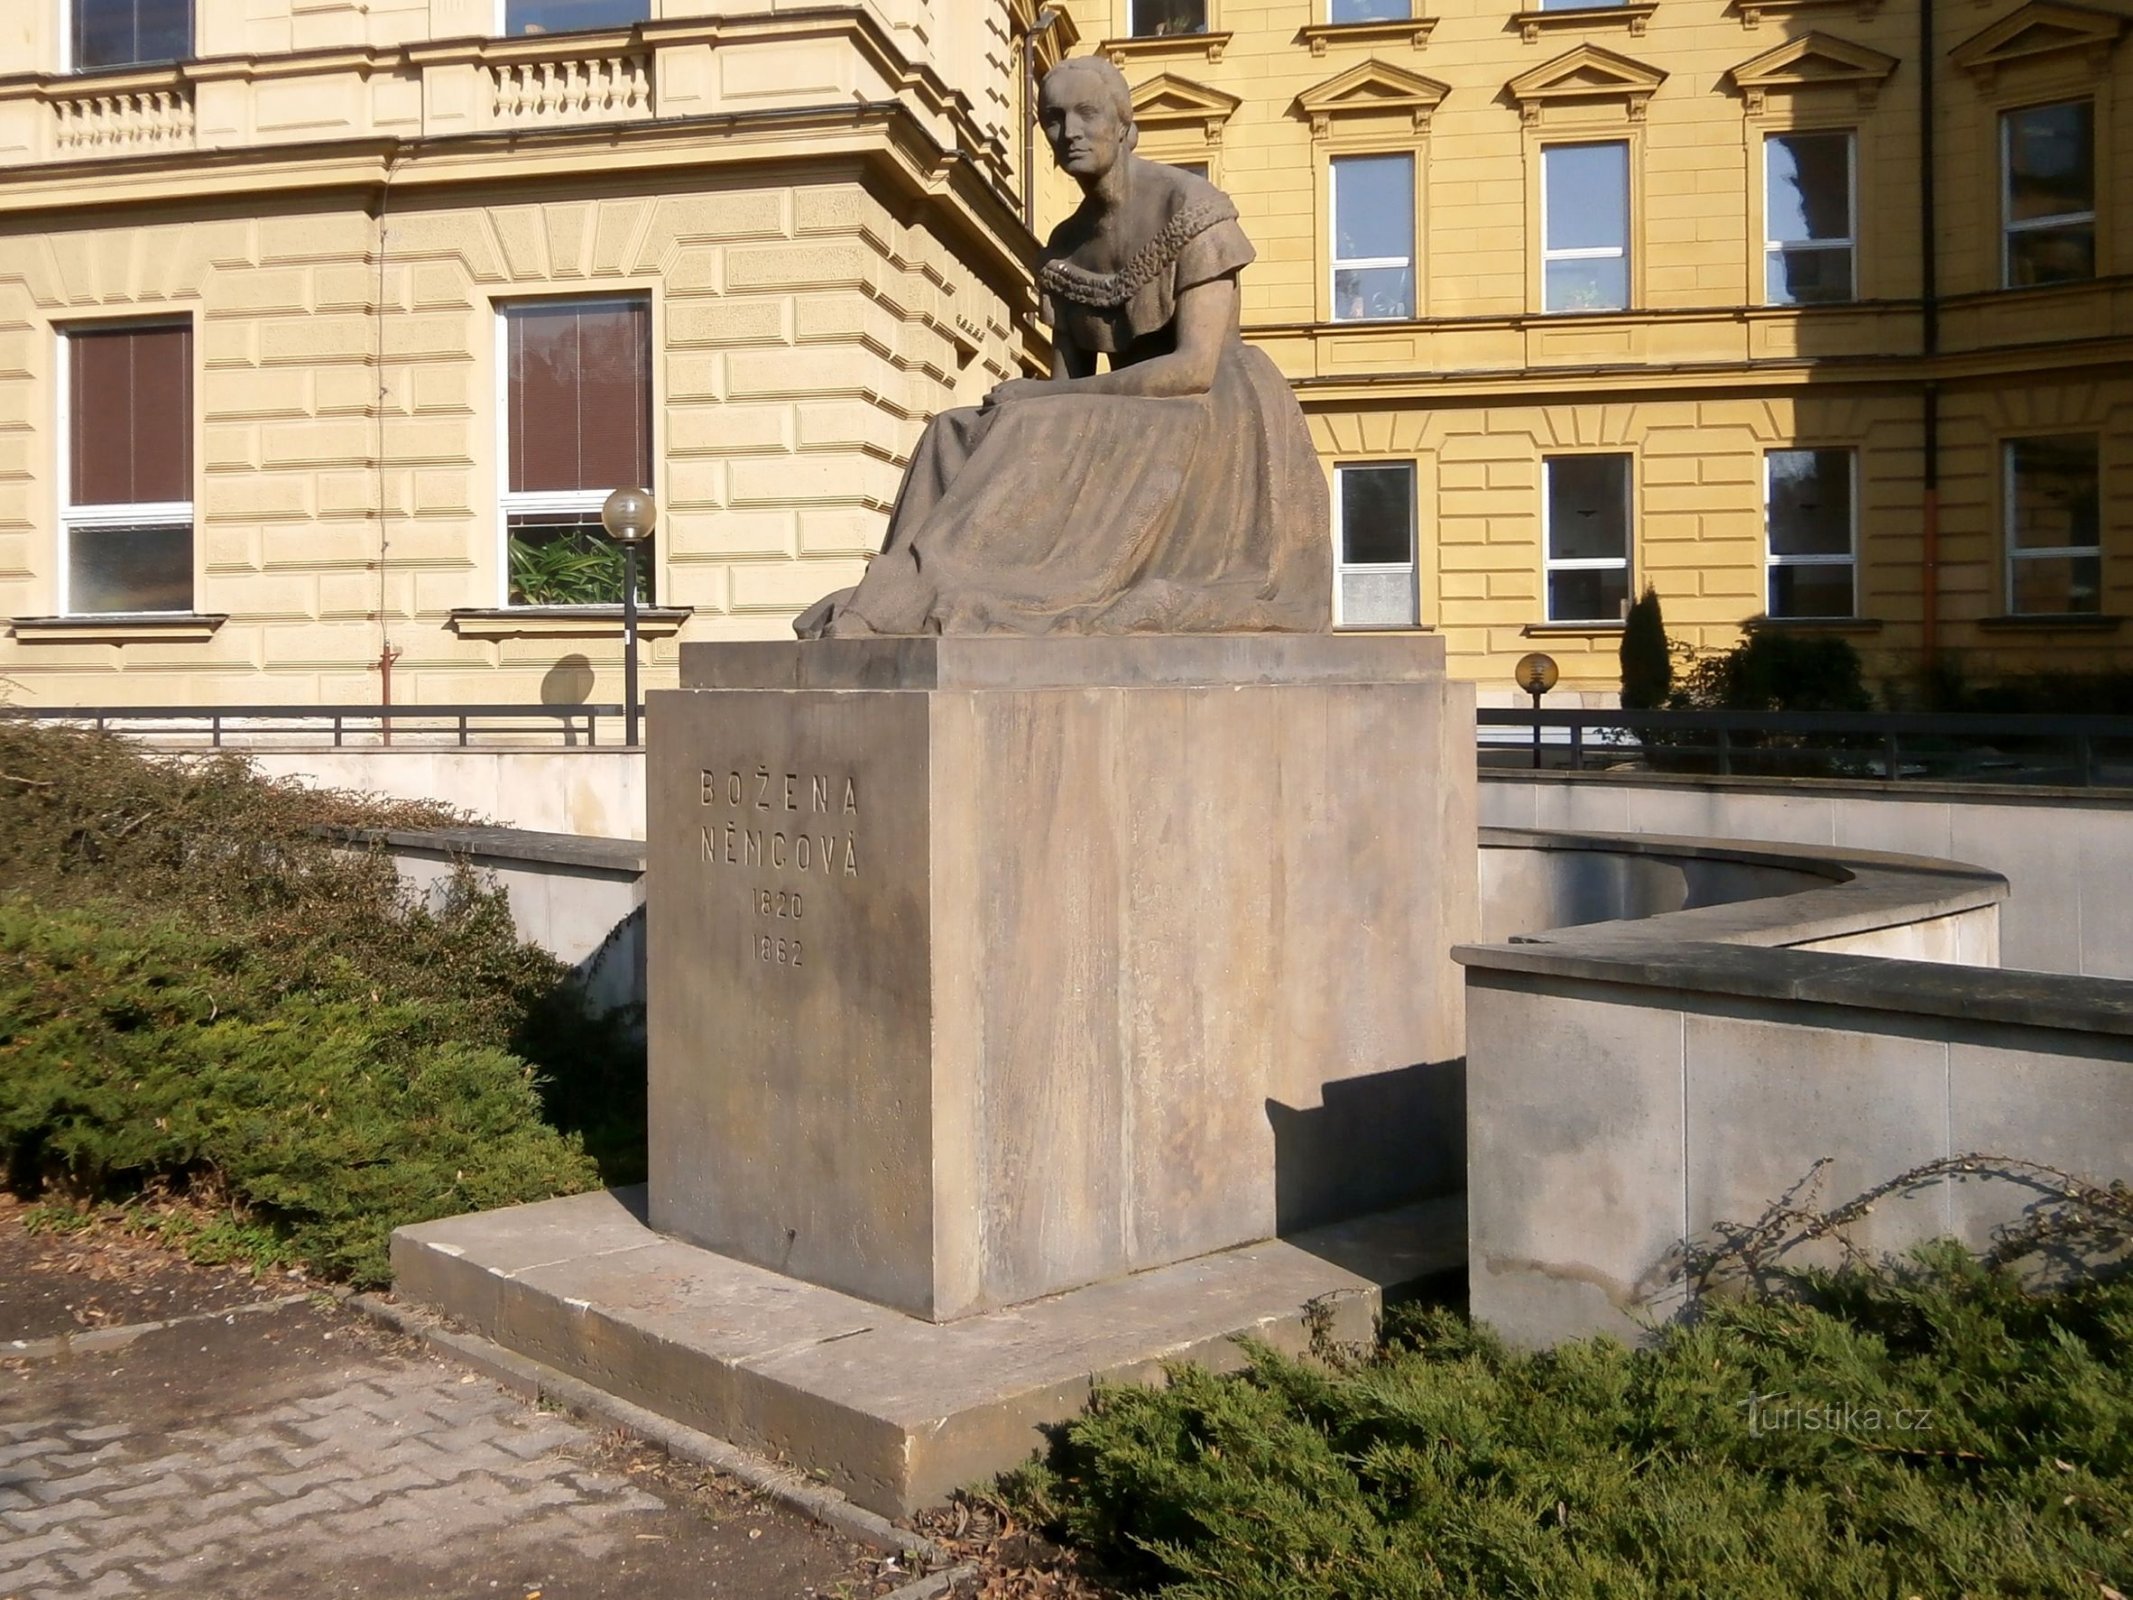 Monument til Bozena Němcová (Hradec Králové, 26.3.2014. juni XNUMX)